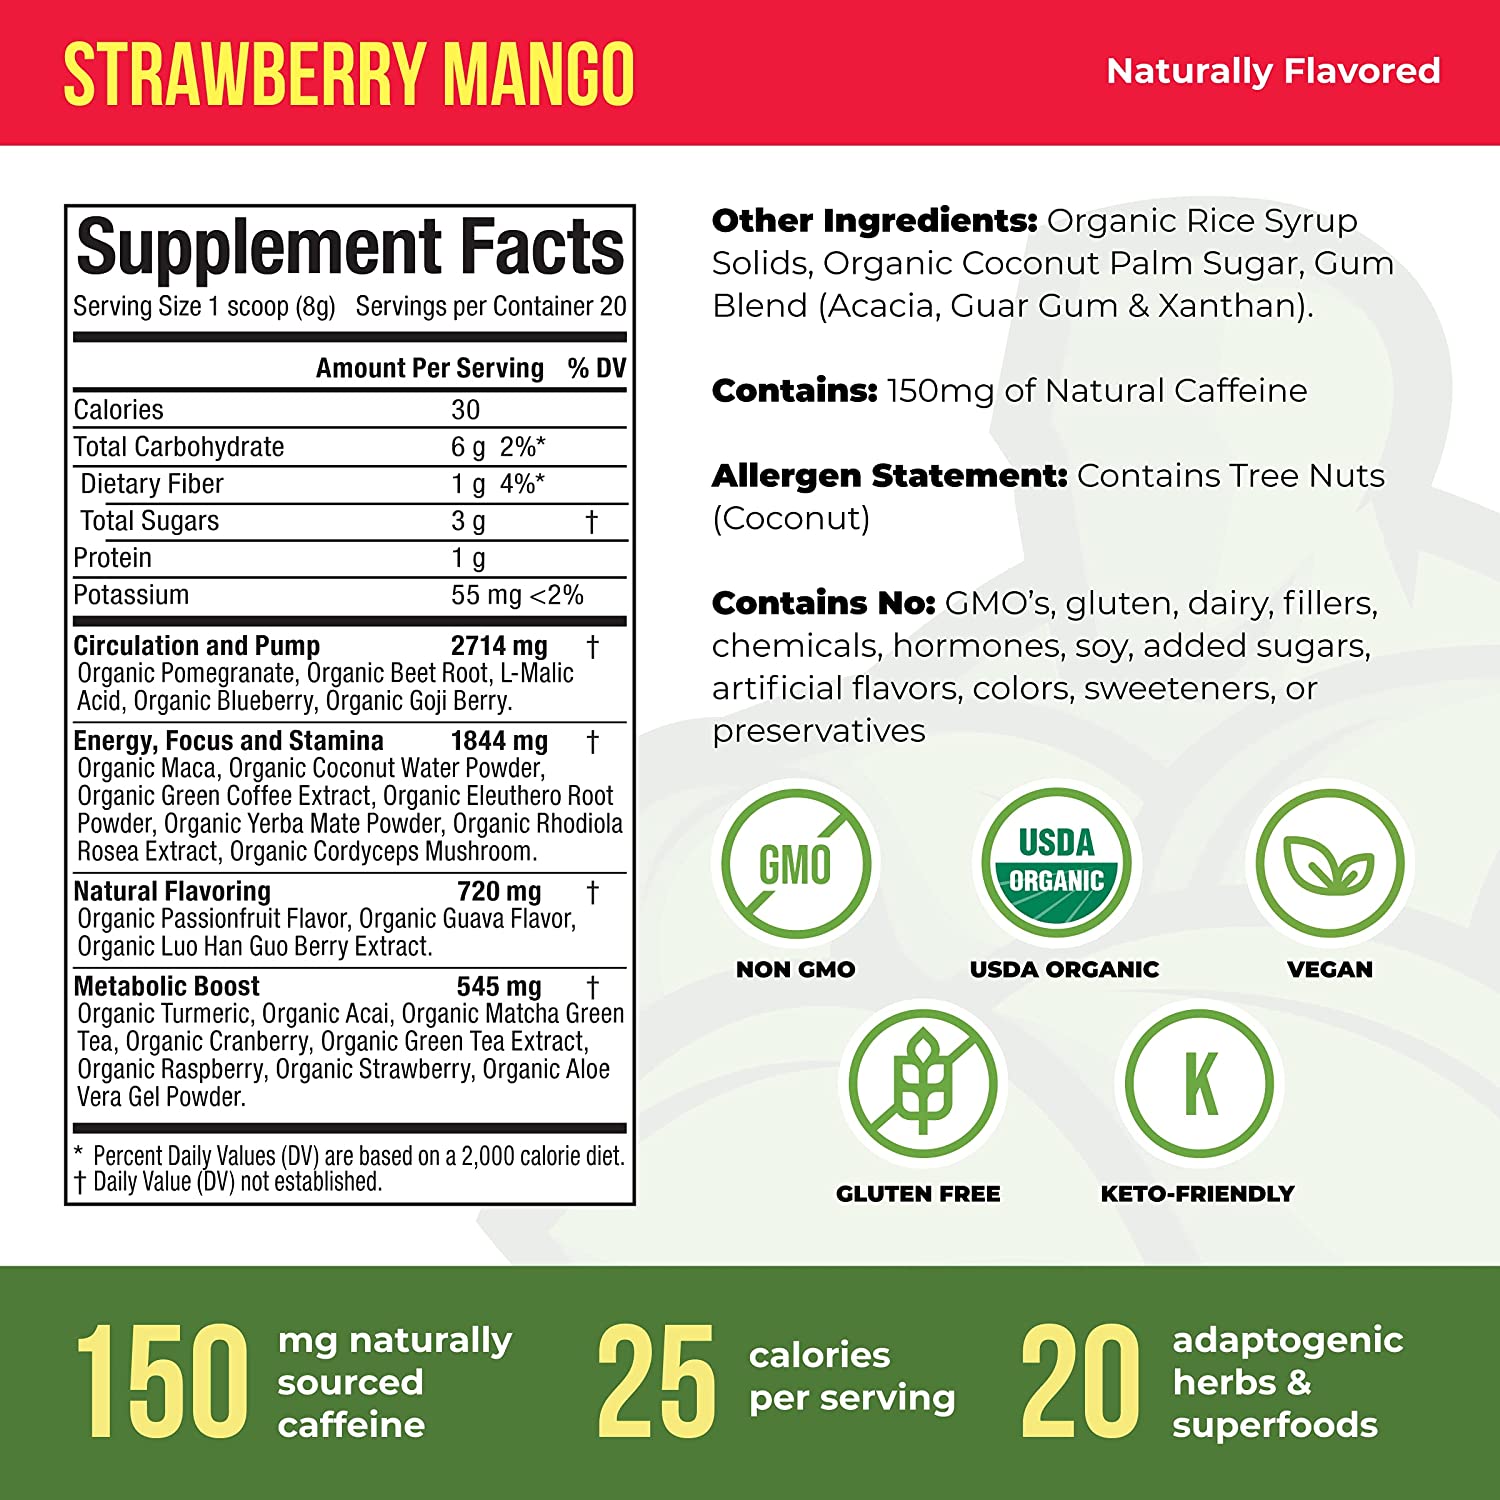 Organic Pre-Workout Powder - Strawberry Mango - 20 Servings